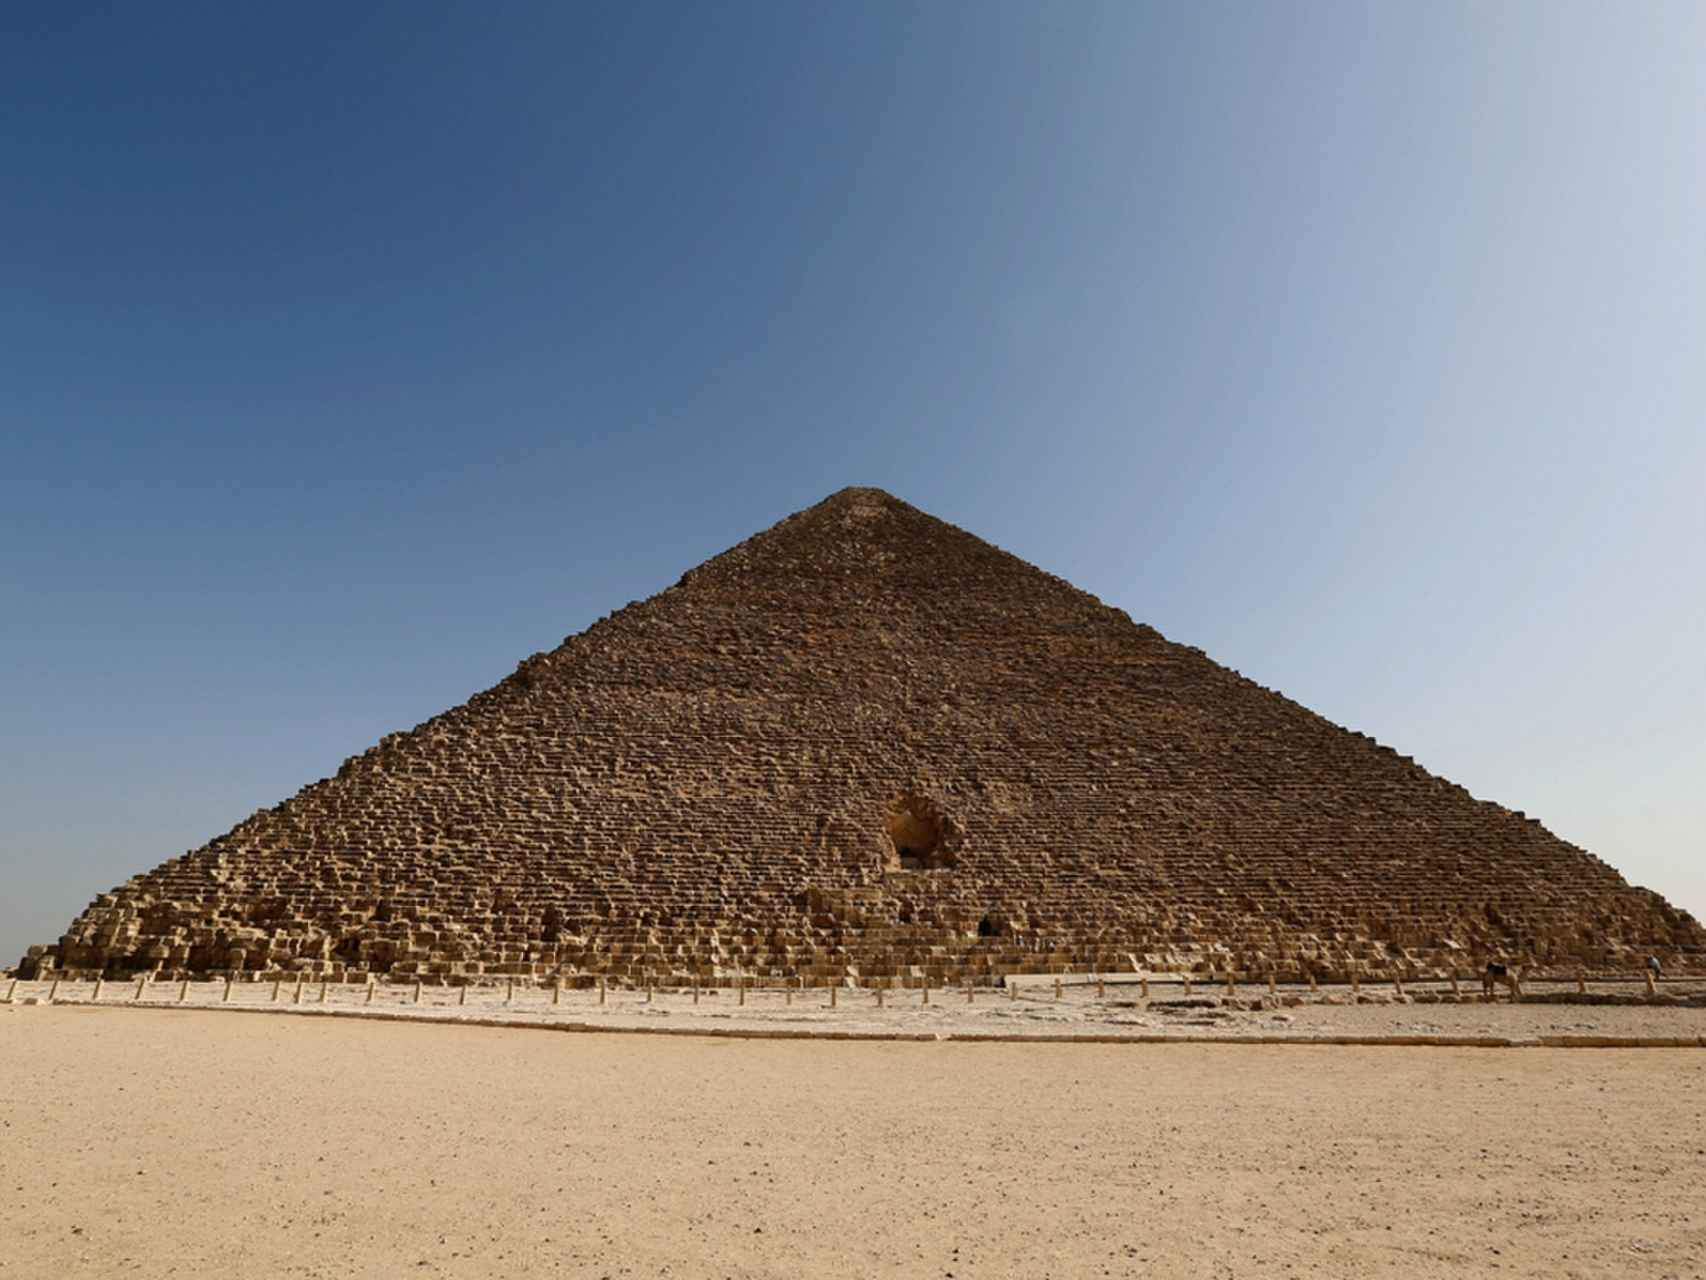 Cara Norte de la pirámide, donde trabajó el equipo de Scan Pyramids.